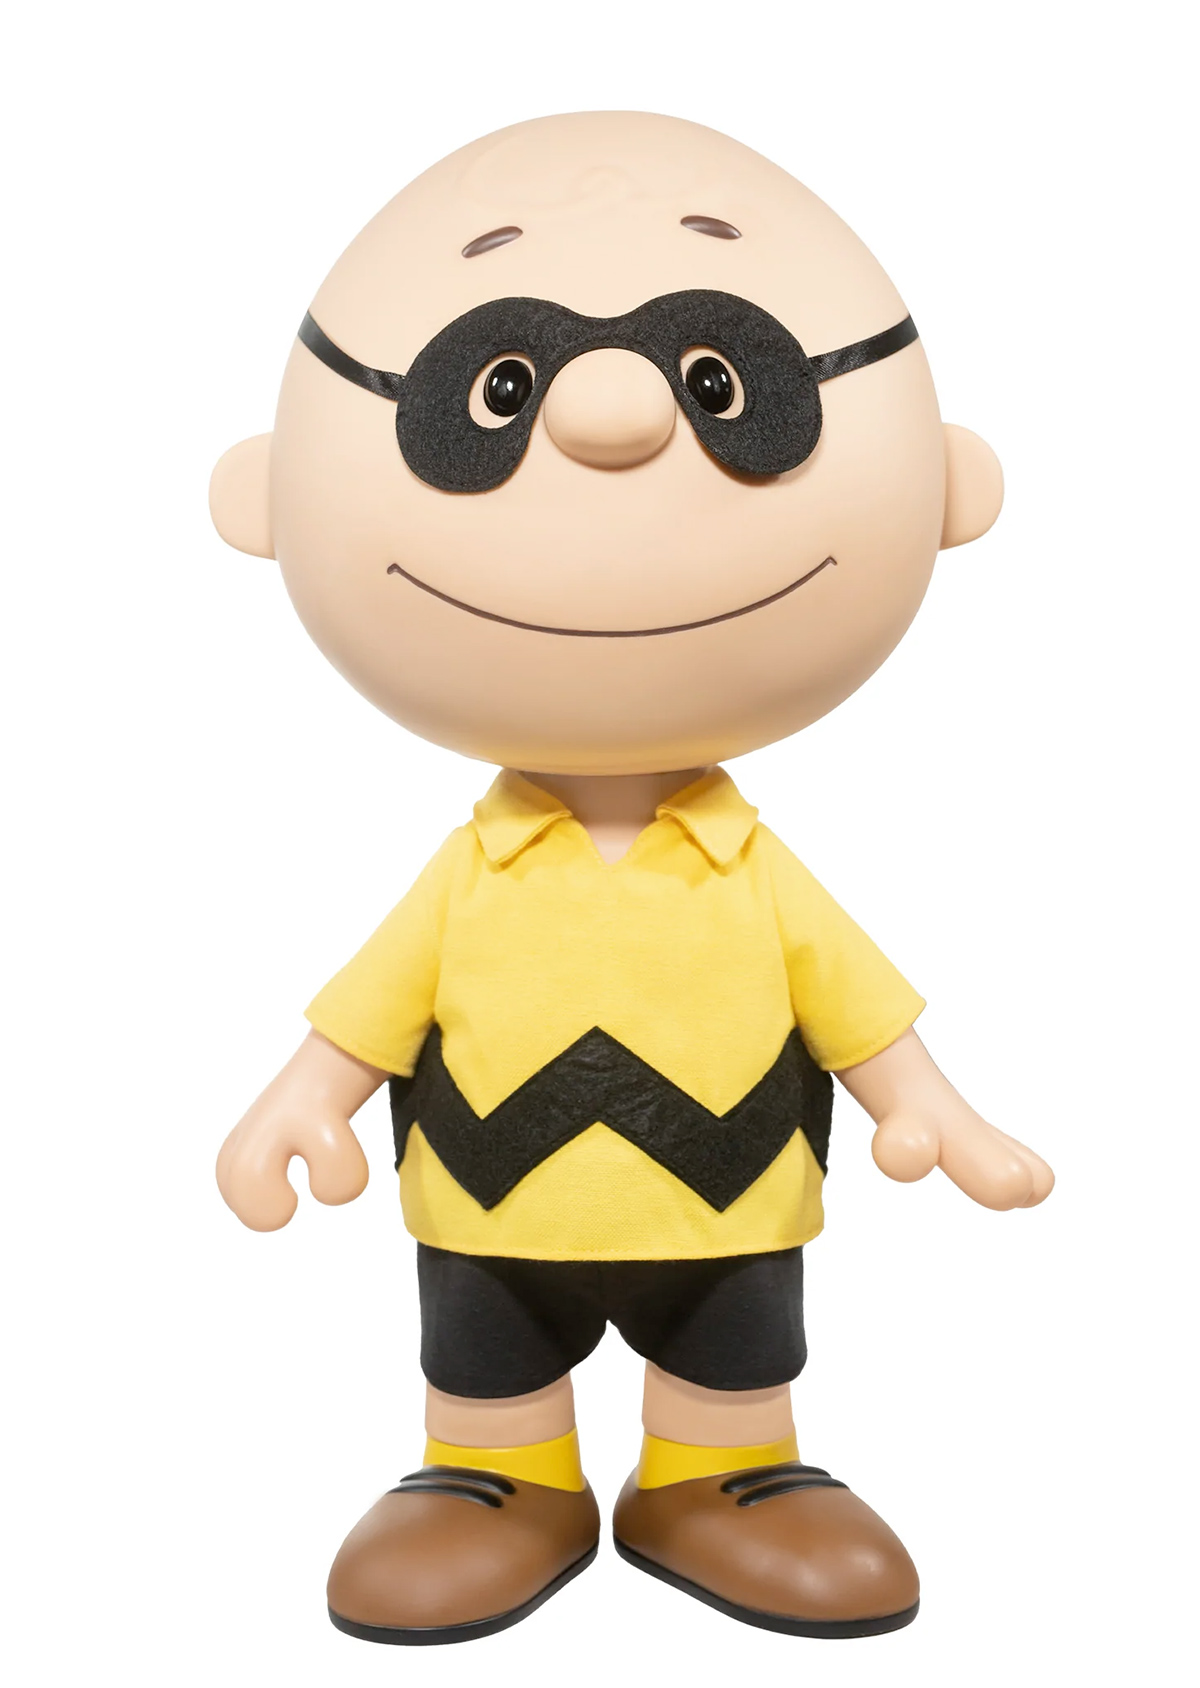 Boneco Gigante Charlie Brown e a Grande Abóbora Supersize (Lençol Fantasma)